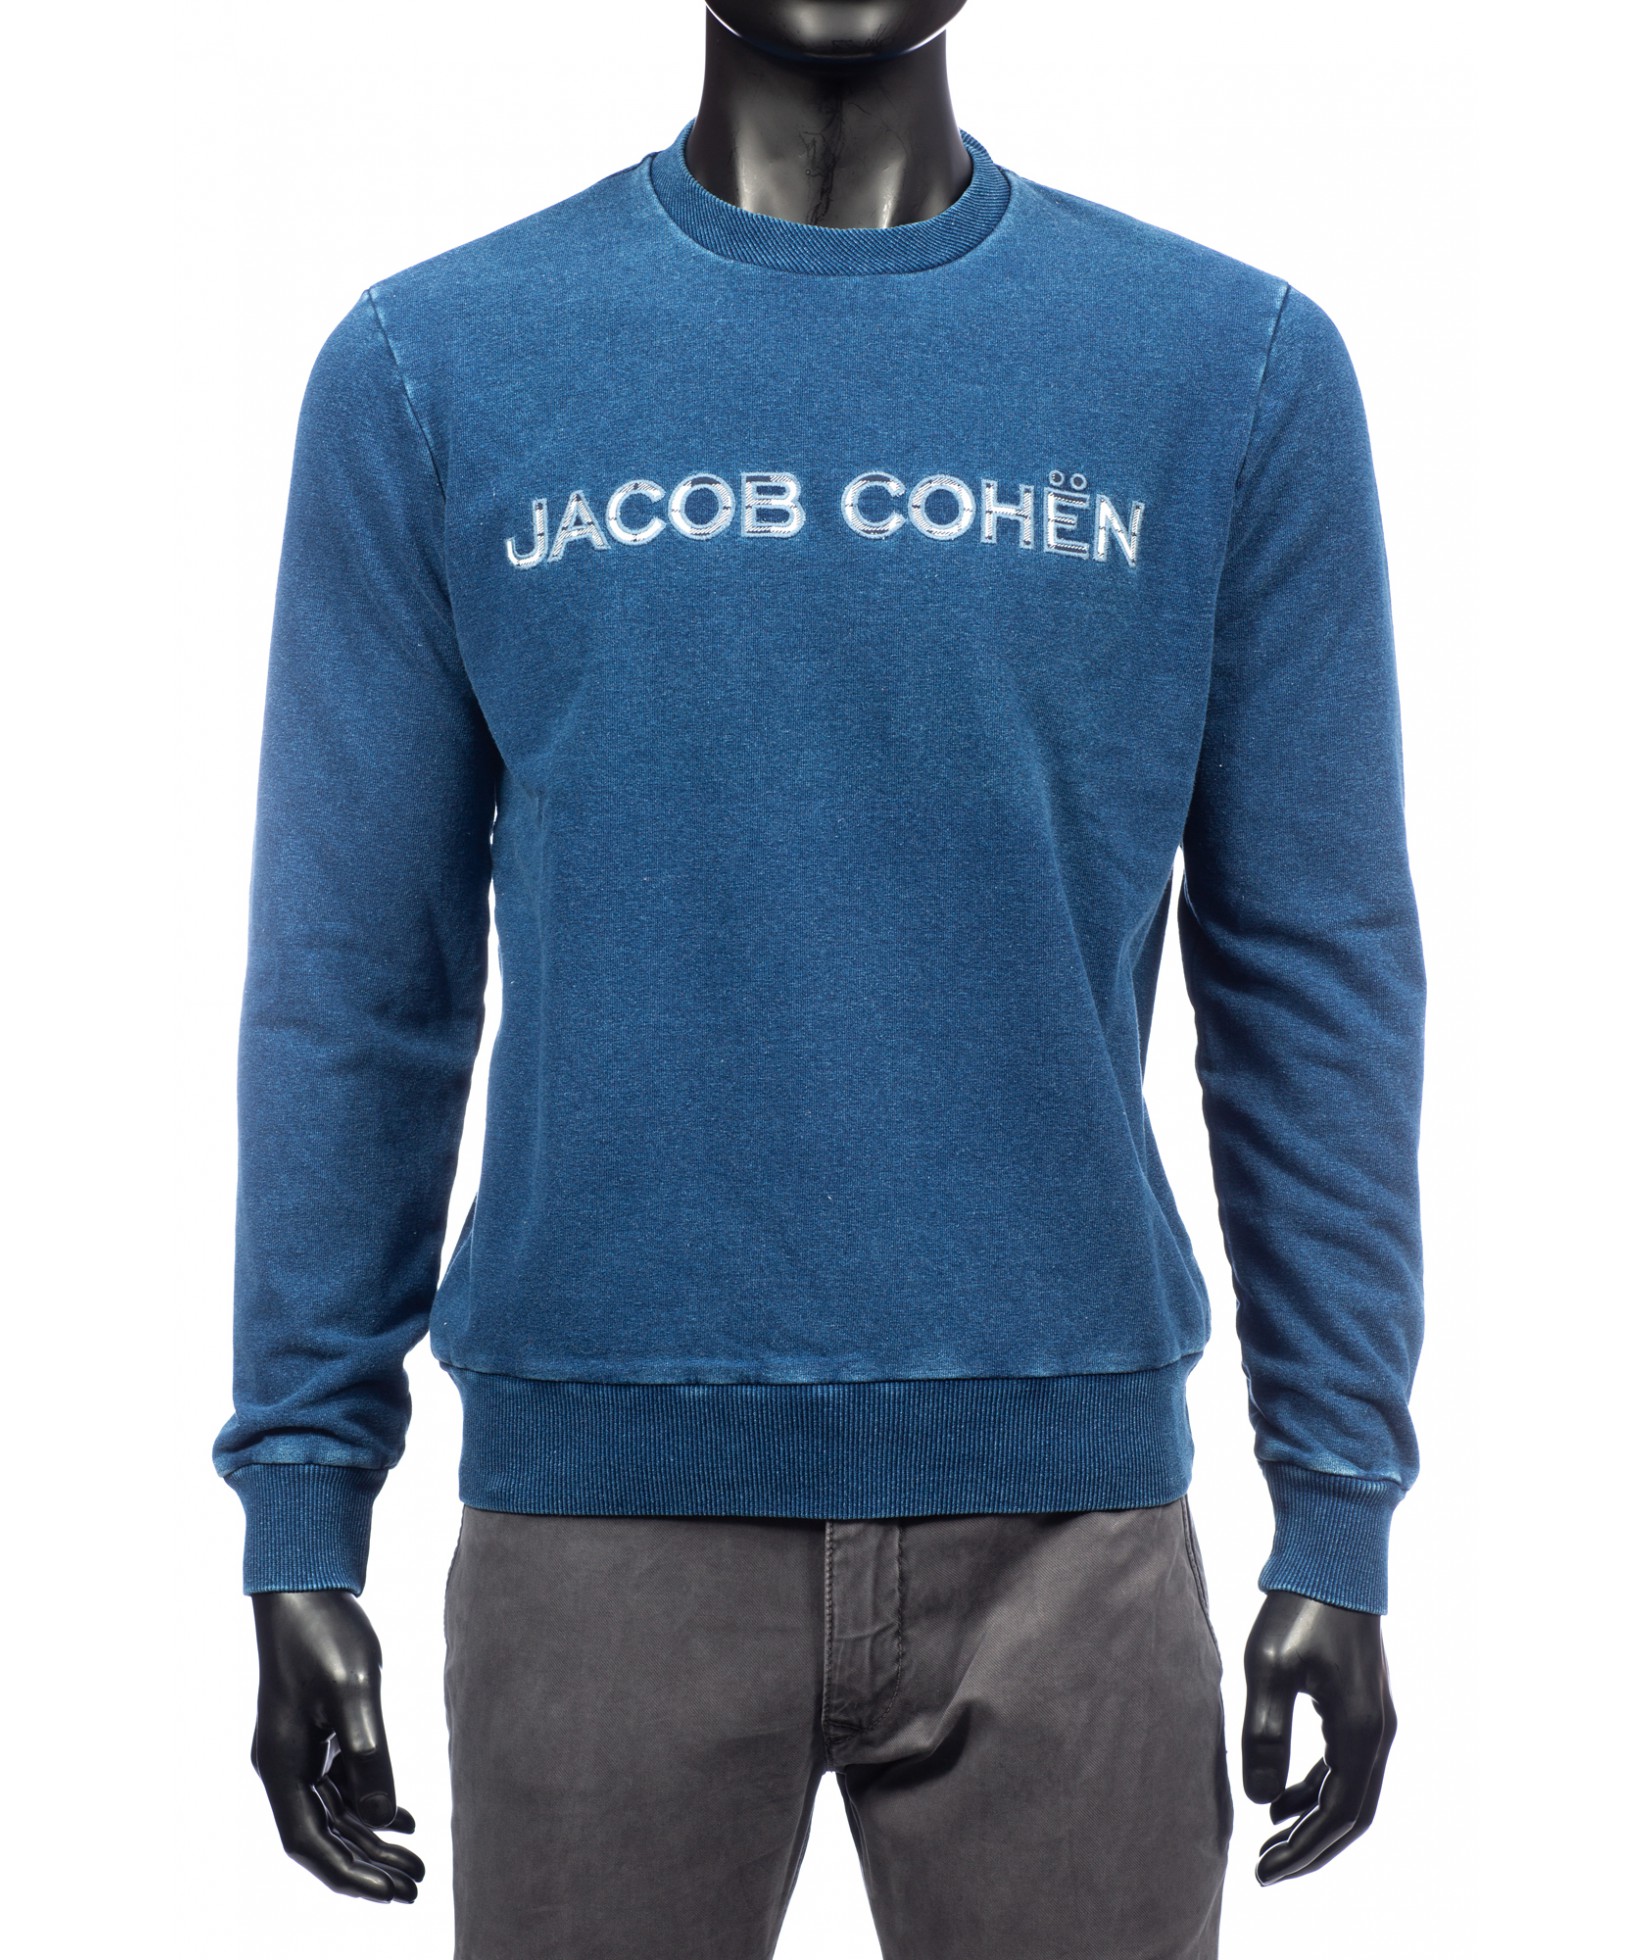 Jacob Cohen Pullover Blau (29629)